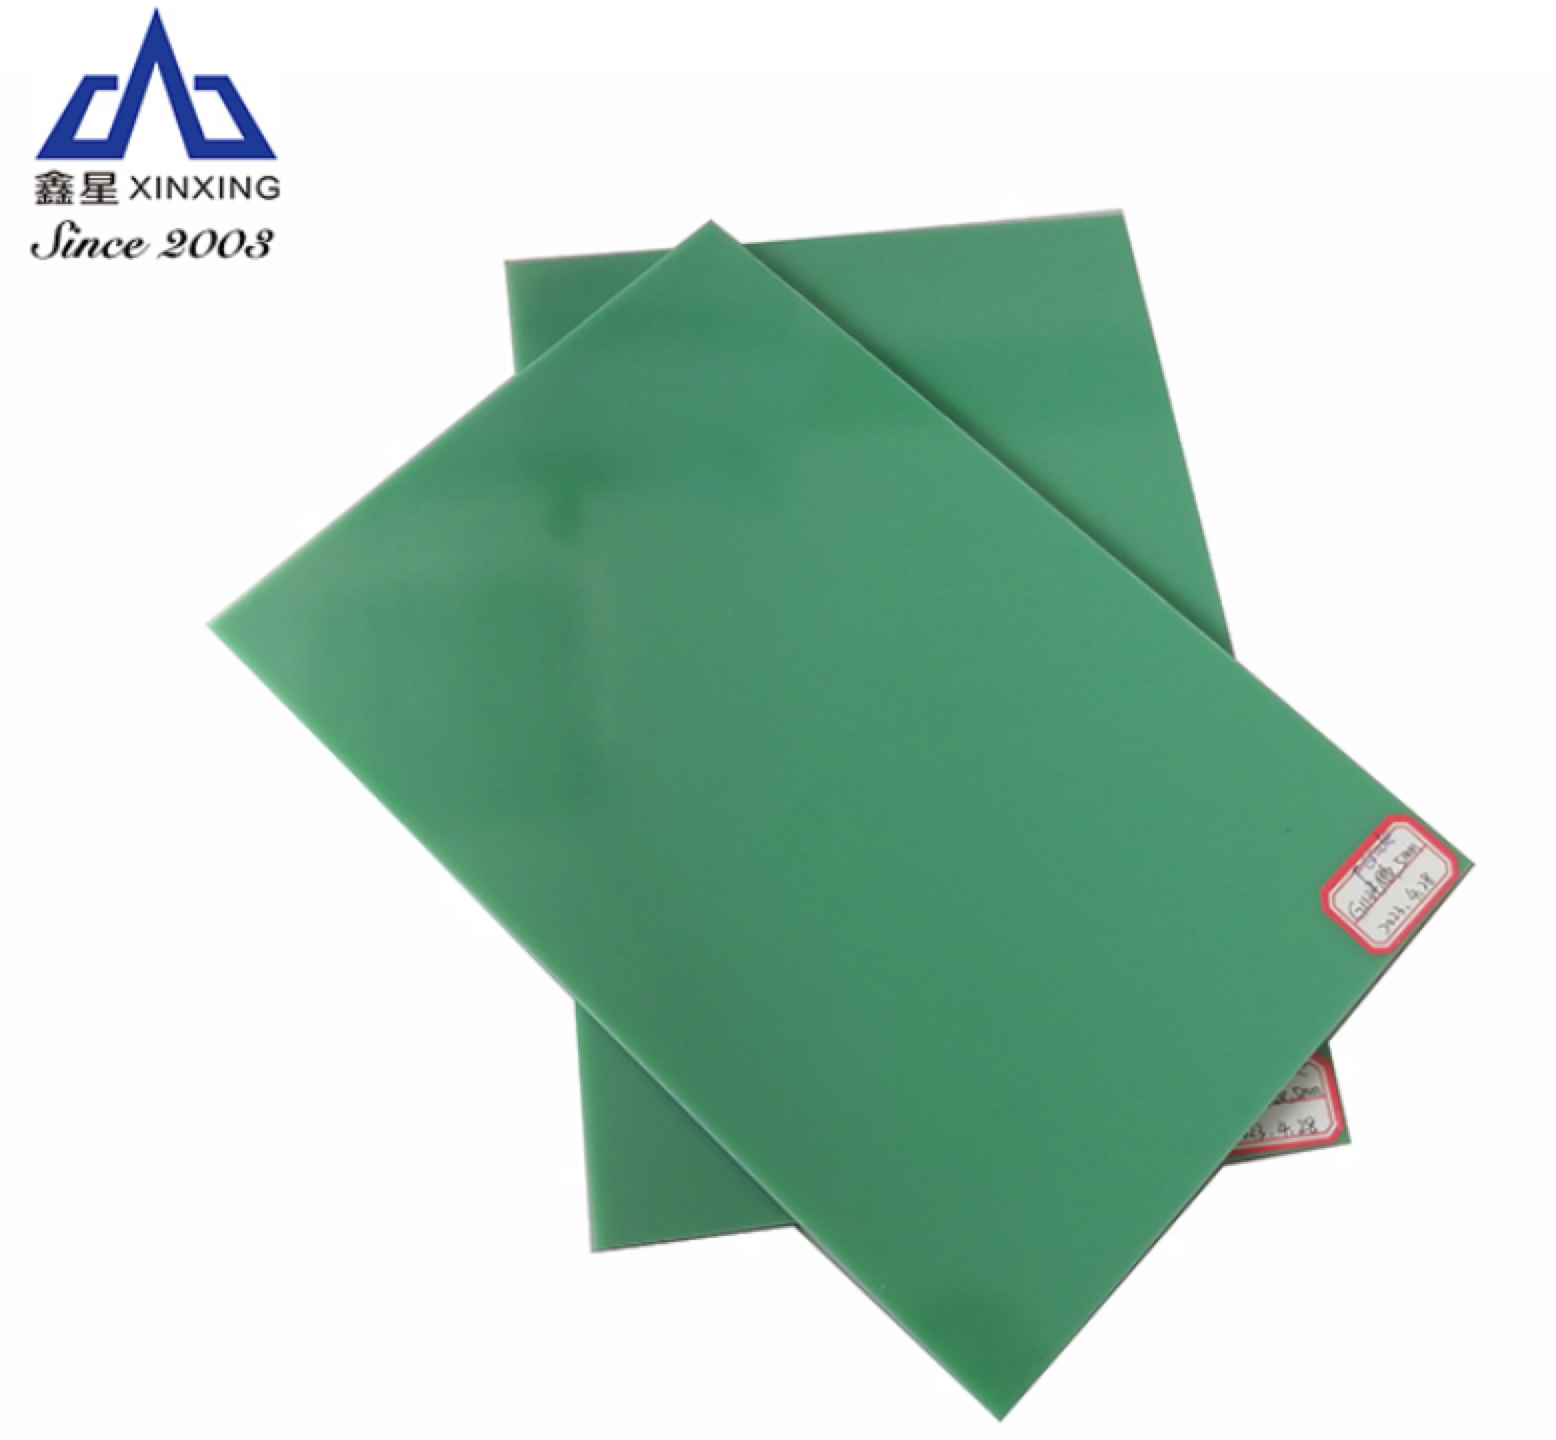 G11 епоксидни пластмасови листове: висококачествени решения, направени от водещия китайски производител на епоксидни пластмасови листове G11